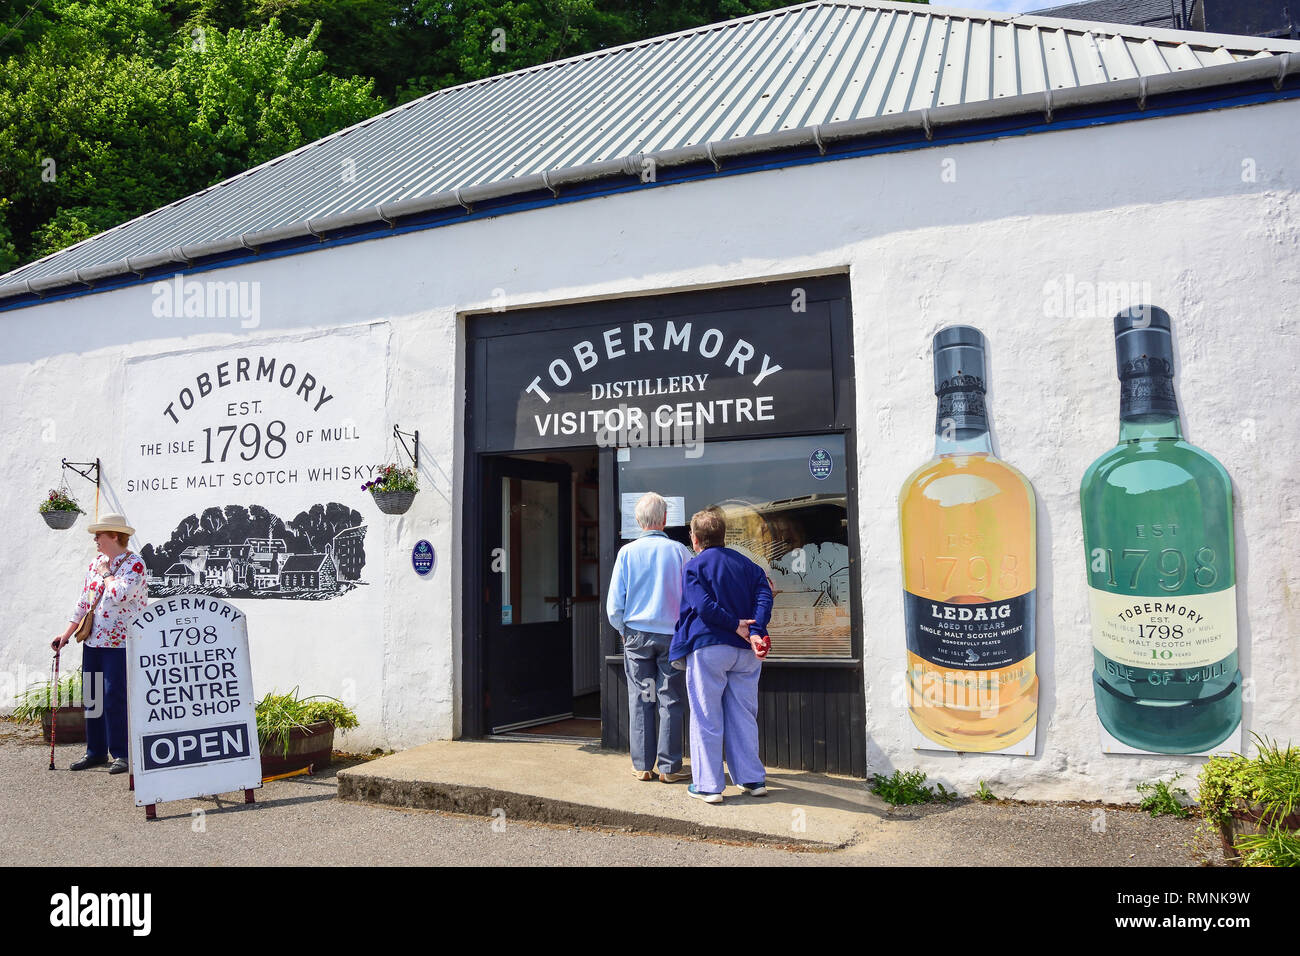 Ingresso al centro visitatori e al negozio della distilleria Tobermory, Ledaig, Tobermory, Isola di Mull, Ebridi interne, Argyll e Bute, Scozia, Regno Unito Foto Stock